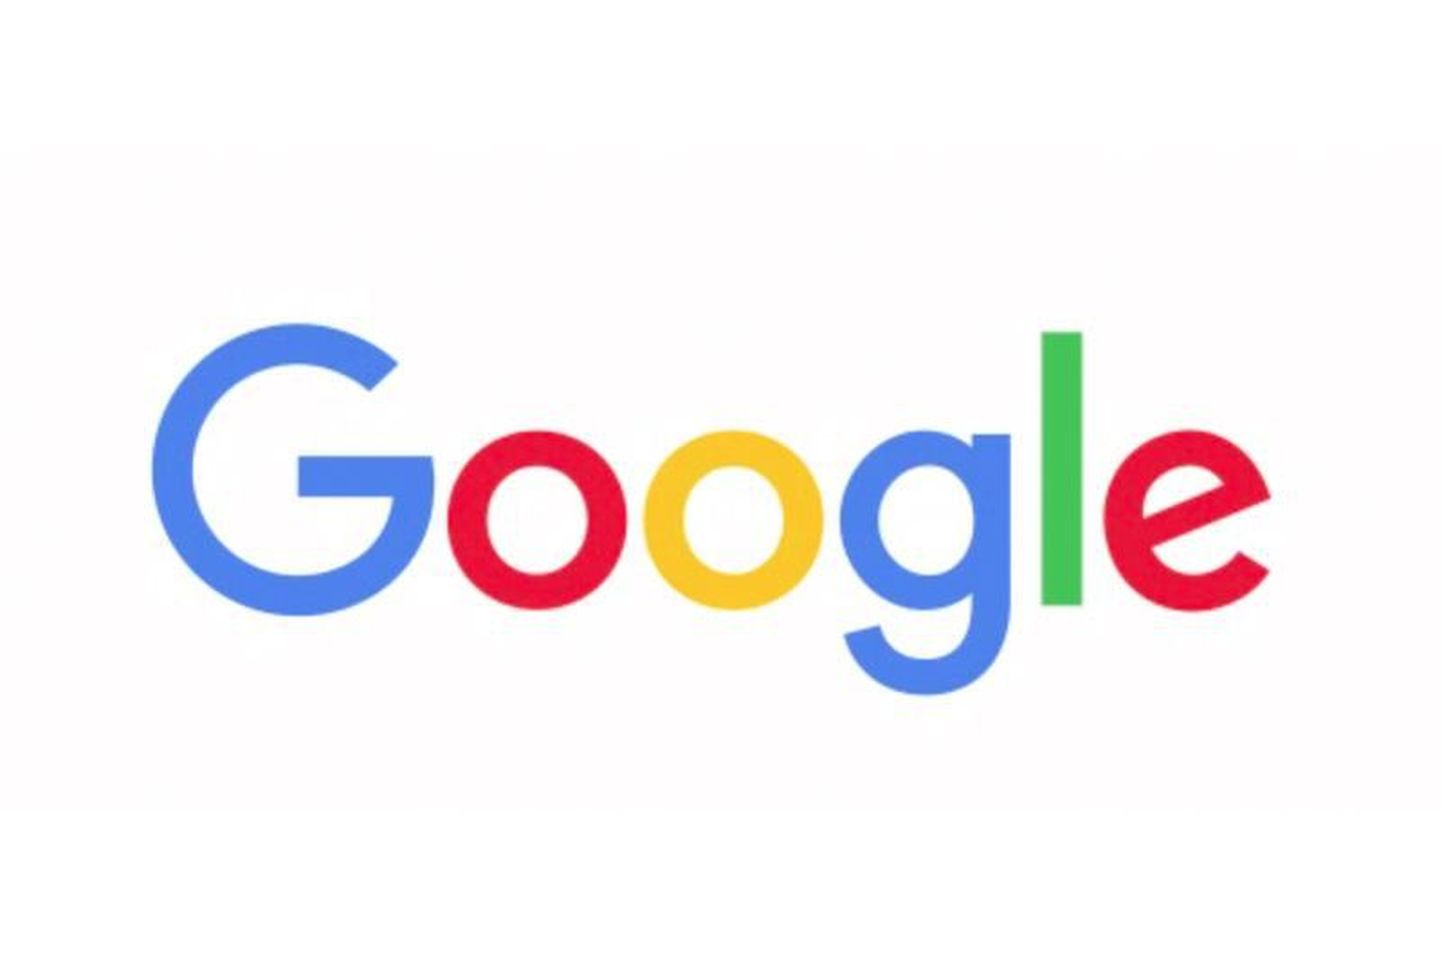 Google'i uus logo.